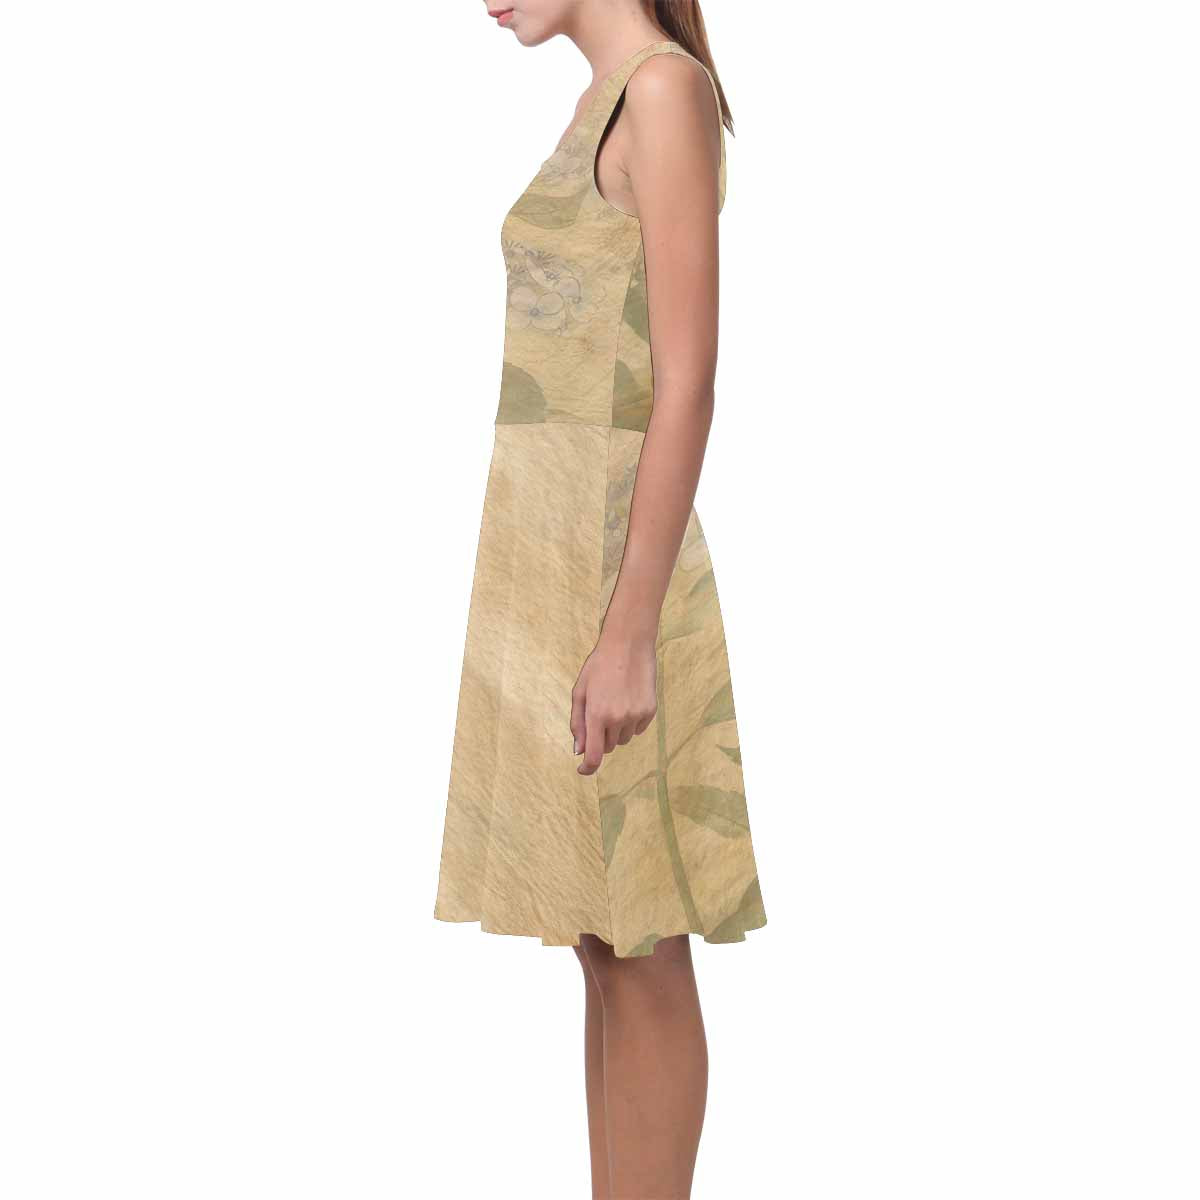 Antique General summer dress, MODEL 09534, design 28